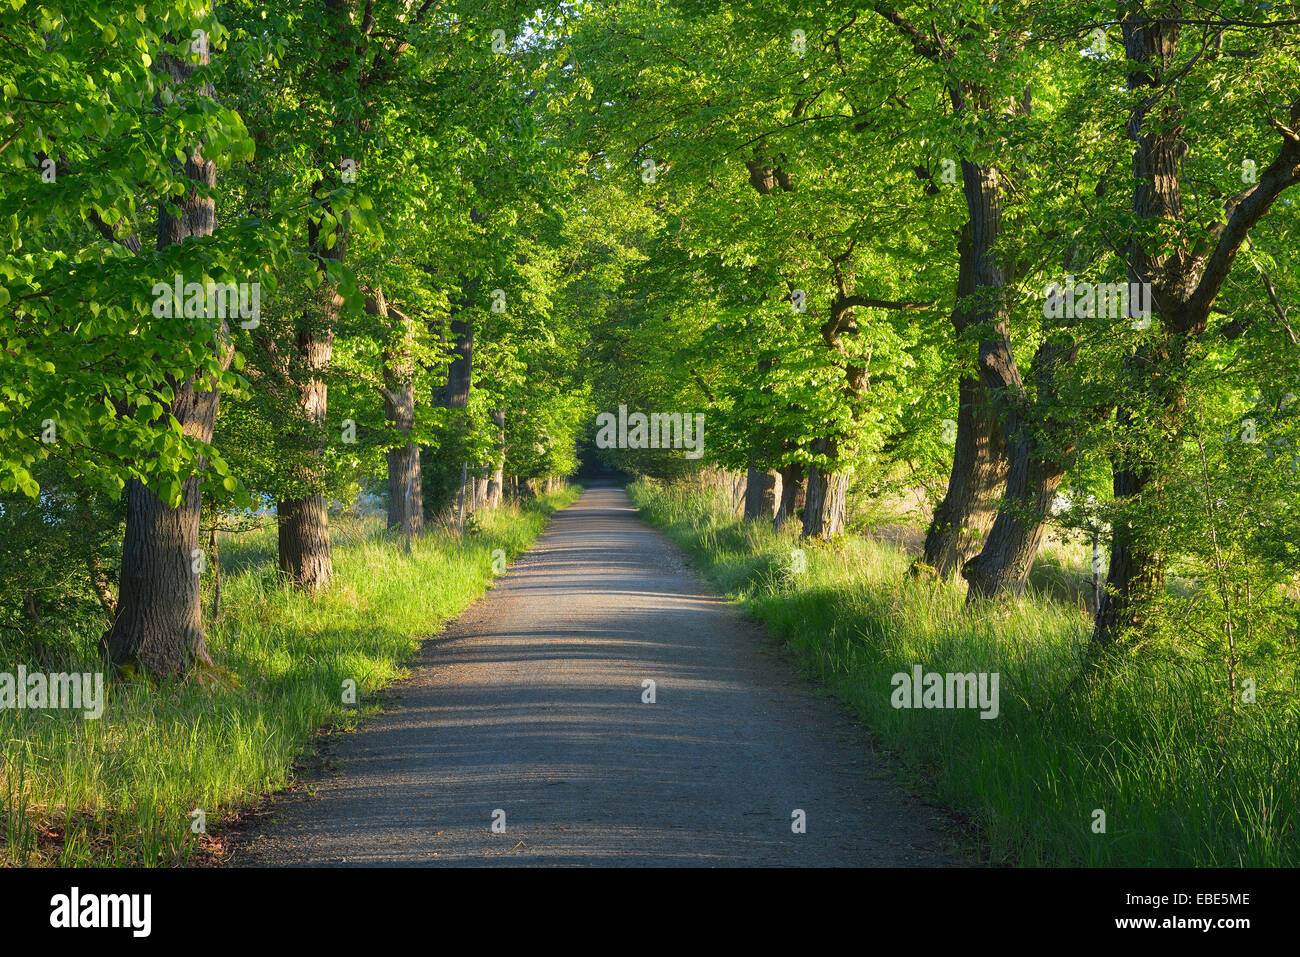 Chestnut avenue bordée d'arbres dans la réserve naturelle, Moenchbruch, Moerfelden-Walldorf, Hesse, Germany, Europe Banque D'Images